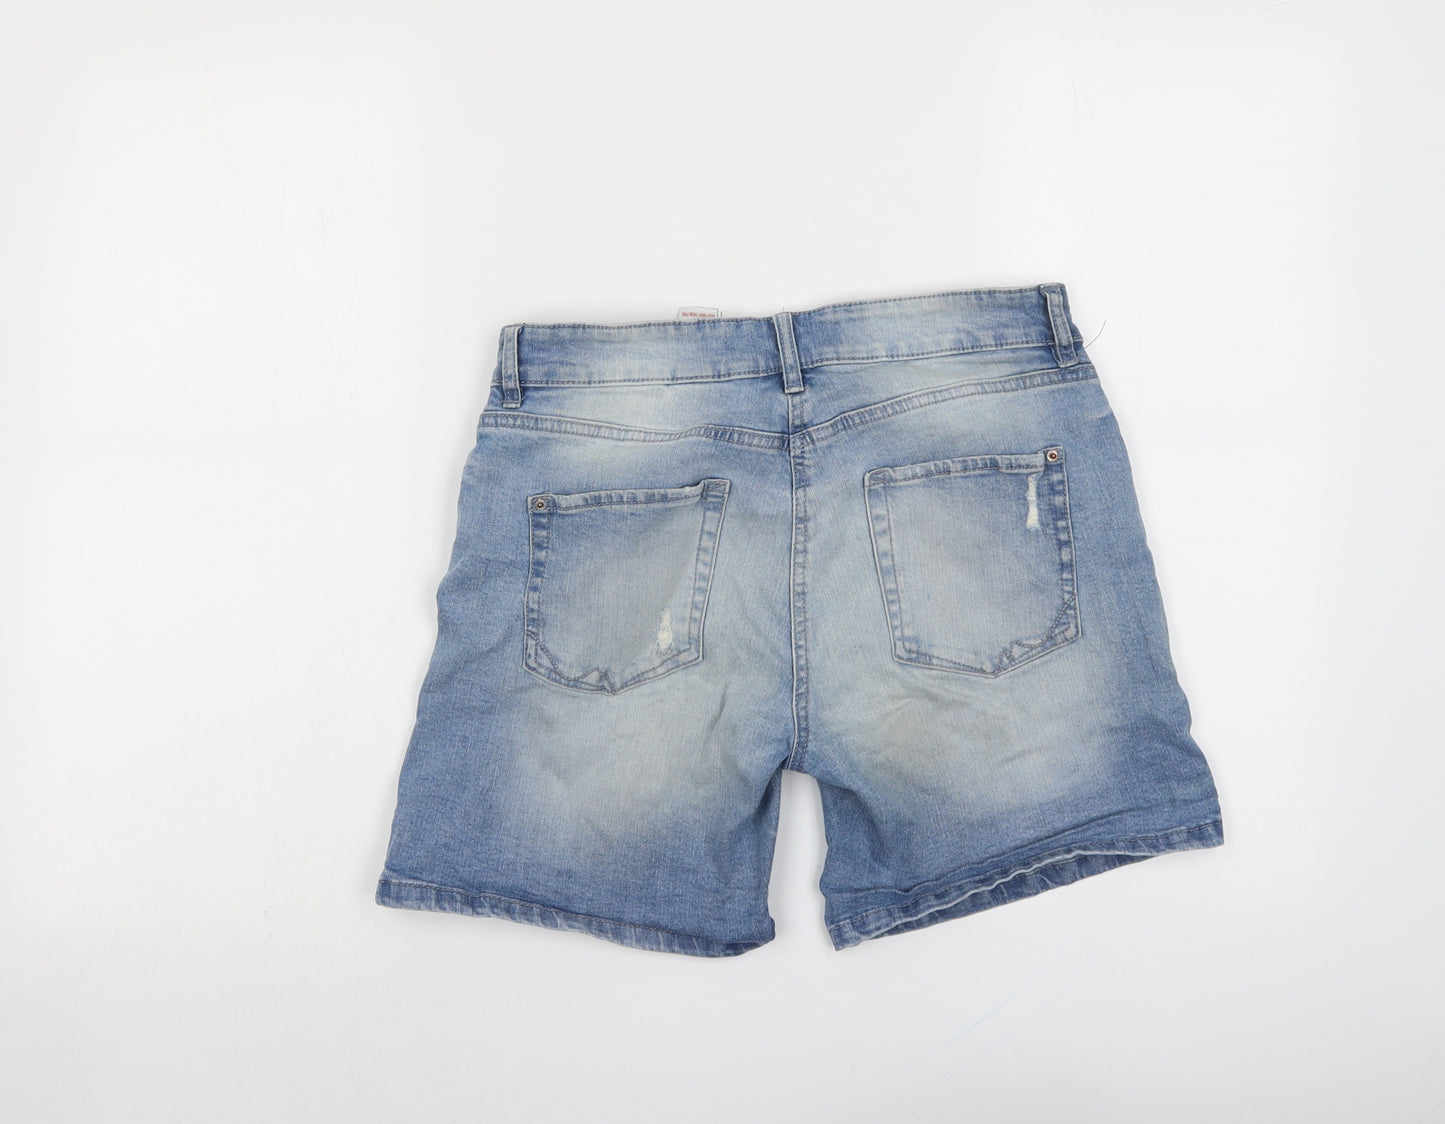 NEXT Womens Blue Cotton Boyfriend Shorts Size 10 L6 in Regular Button - Distressed